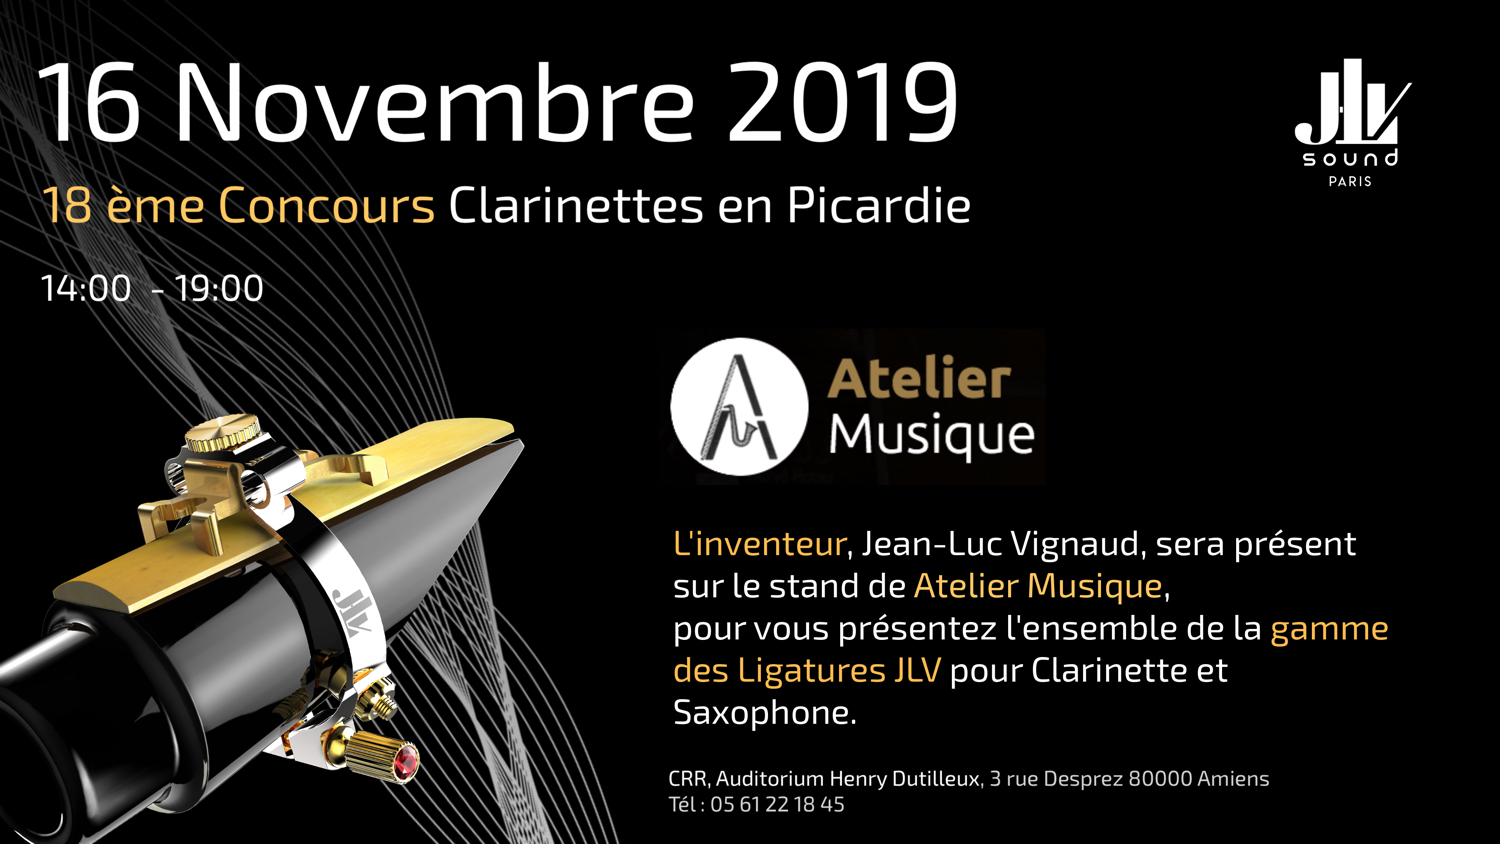 Atelier Musique Concours de Clarinette en Picardie 16 novembre 2019 présentation de la gamme des Ligatures JLV 